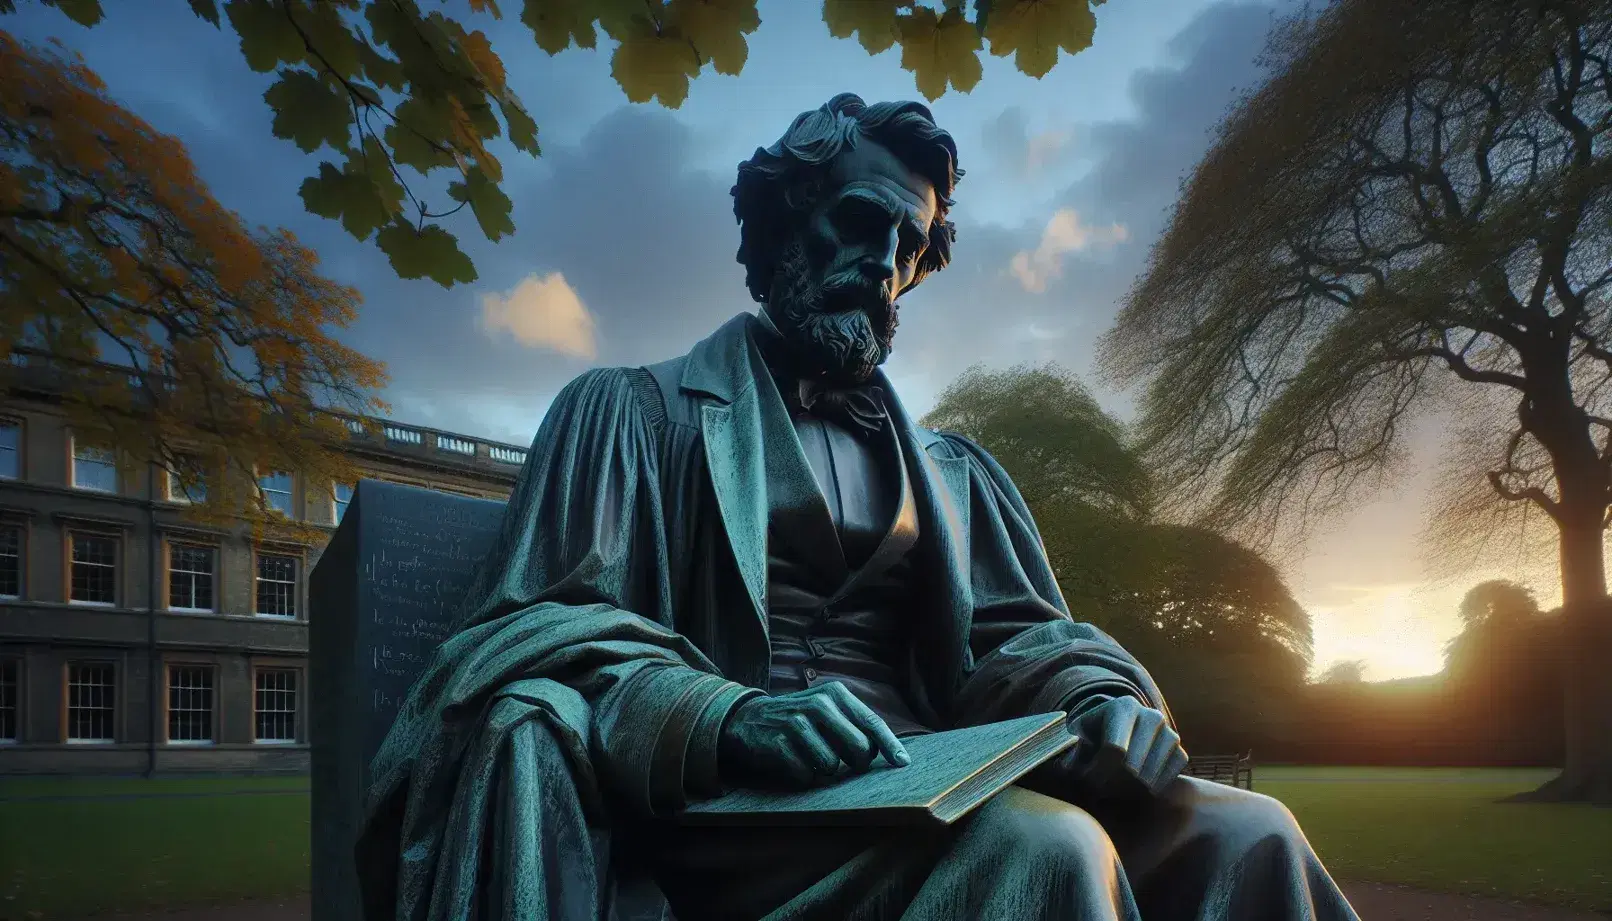 Statua in bronzo di filosofo seduto in posa riflessiva con libro aperto, in contesto esterno con alberi e cielo al tramonto.